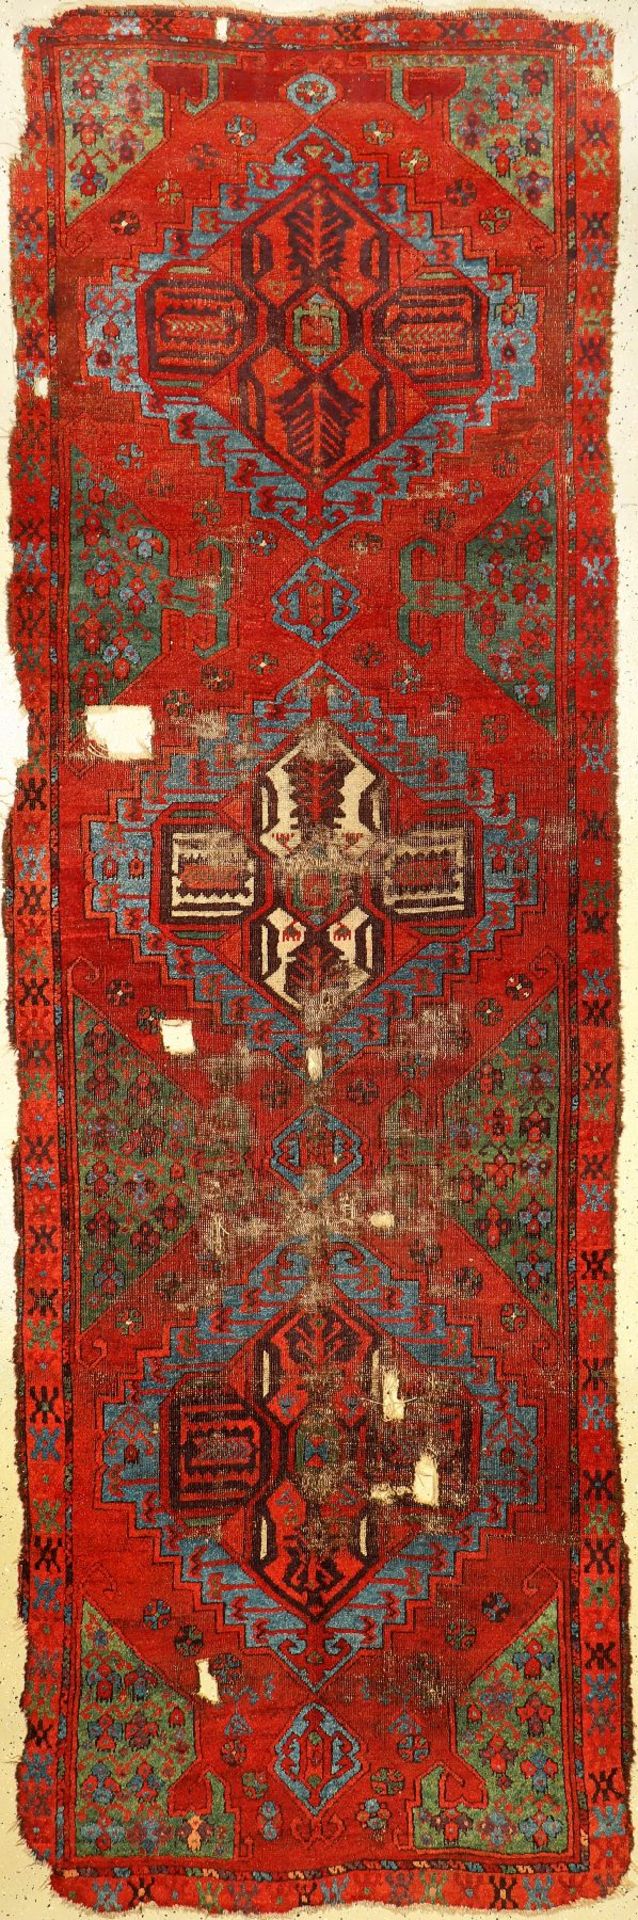 Karapinar "Galerie" antik, Zentralanatolien Konya-Region, Mitte 19.Jhd., Wolle geknüpft auf Wolle.